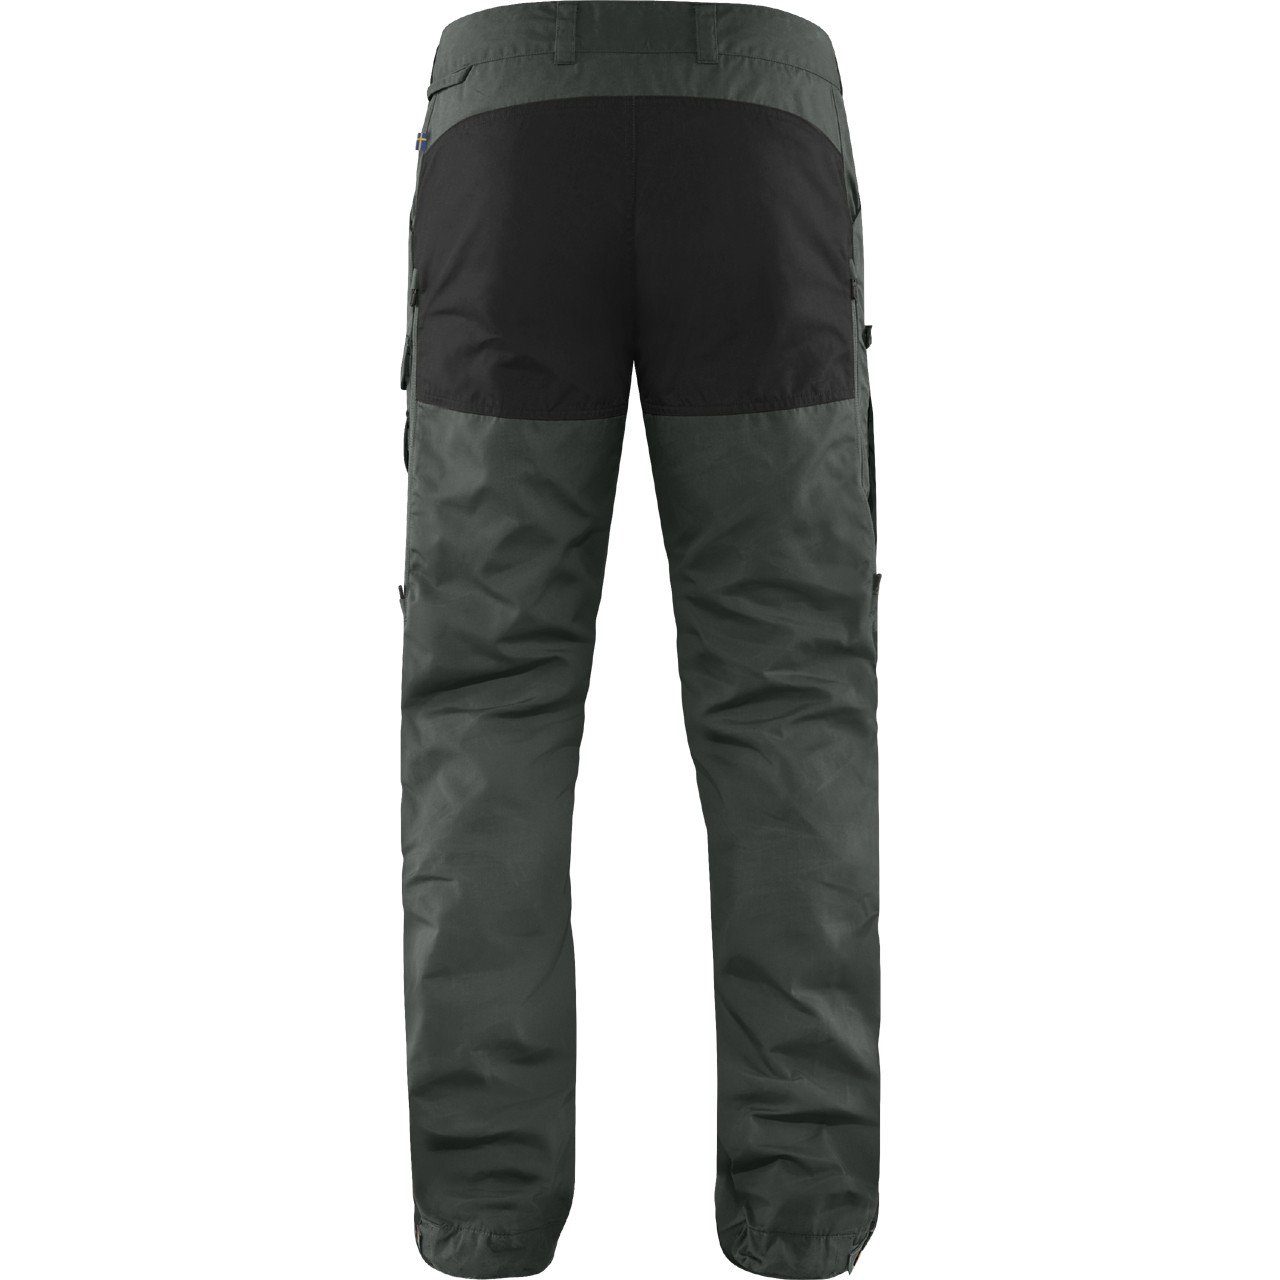 Pro Fjällräven dark Trekkinghose Trousers Men Vidda Ventilated grey-black